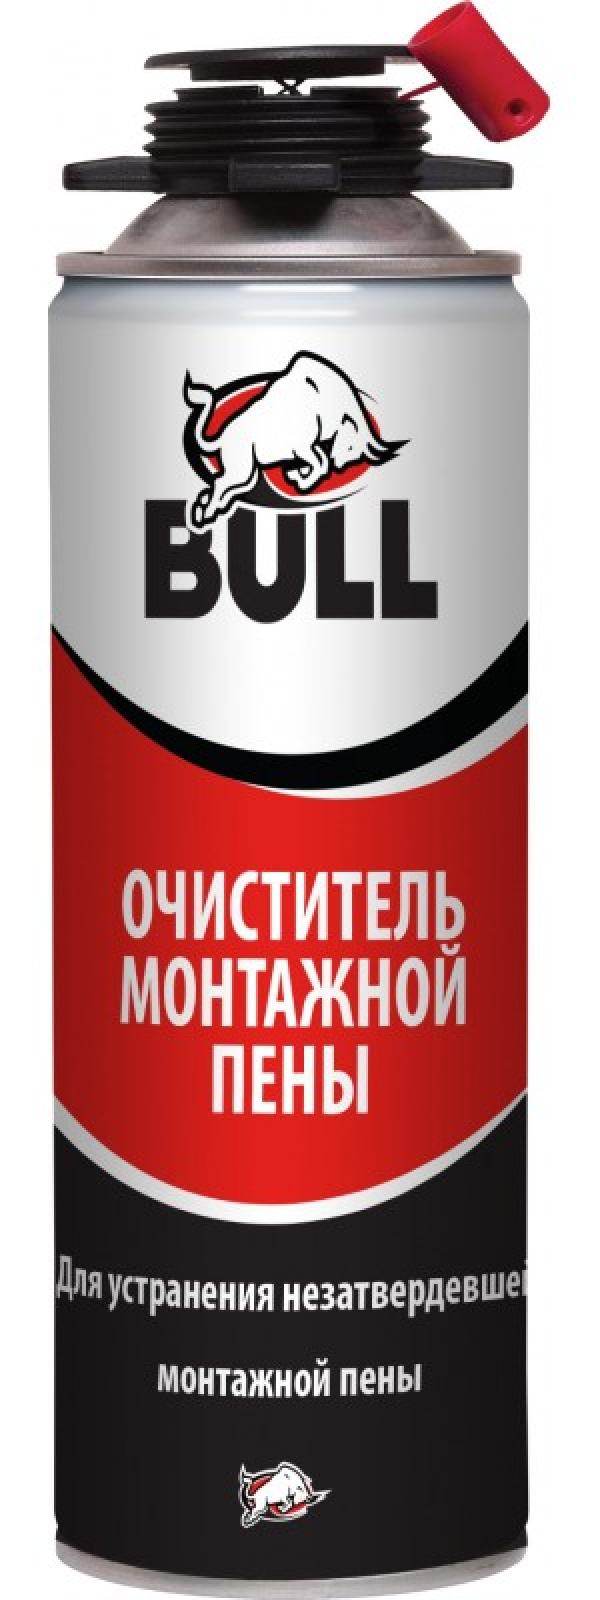 Bull Очиститель монтажной пены 500 мл купить онлайн за 143 руб. в интернет-магазине ТД ОЛИС